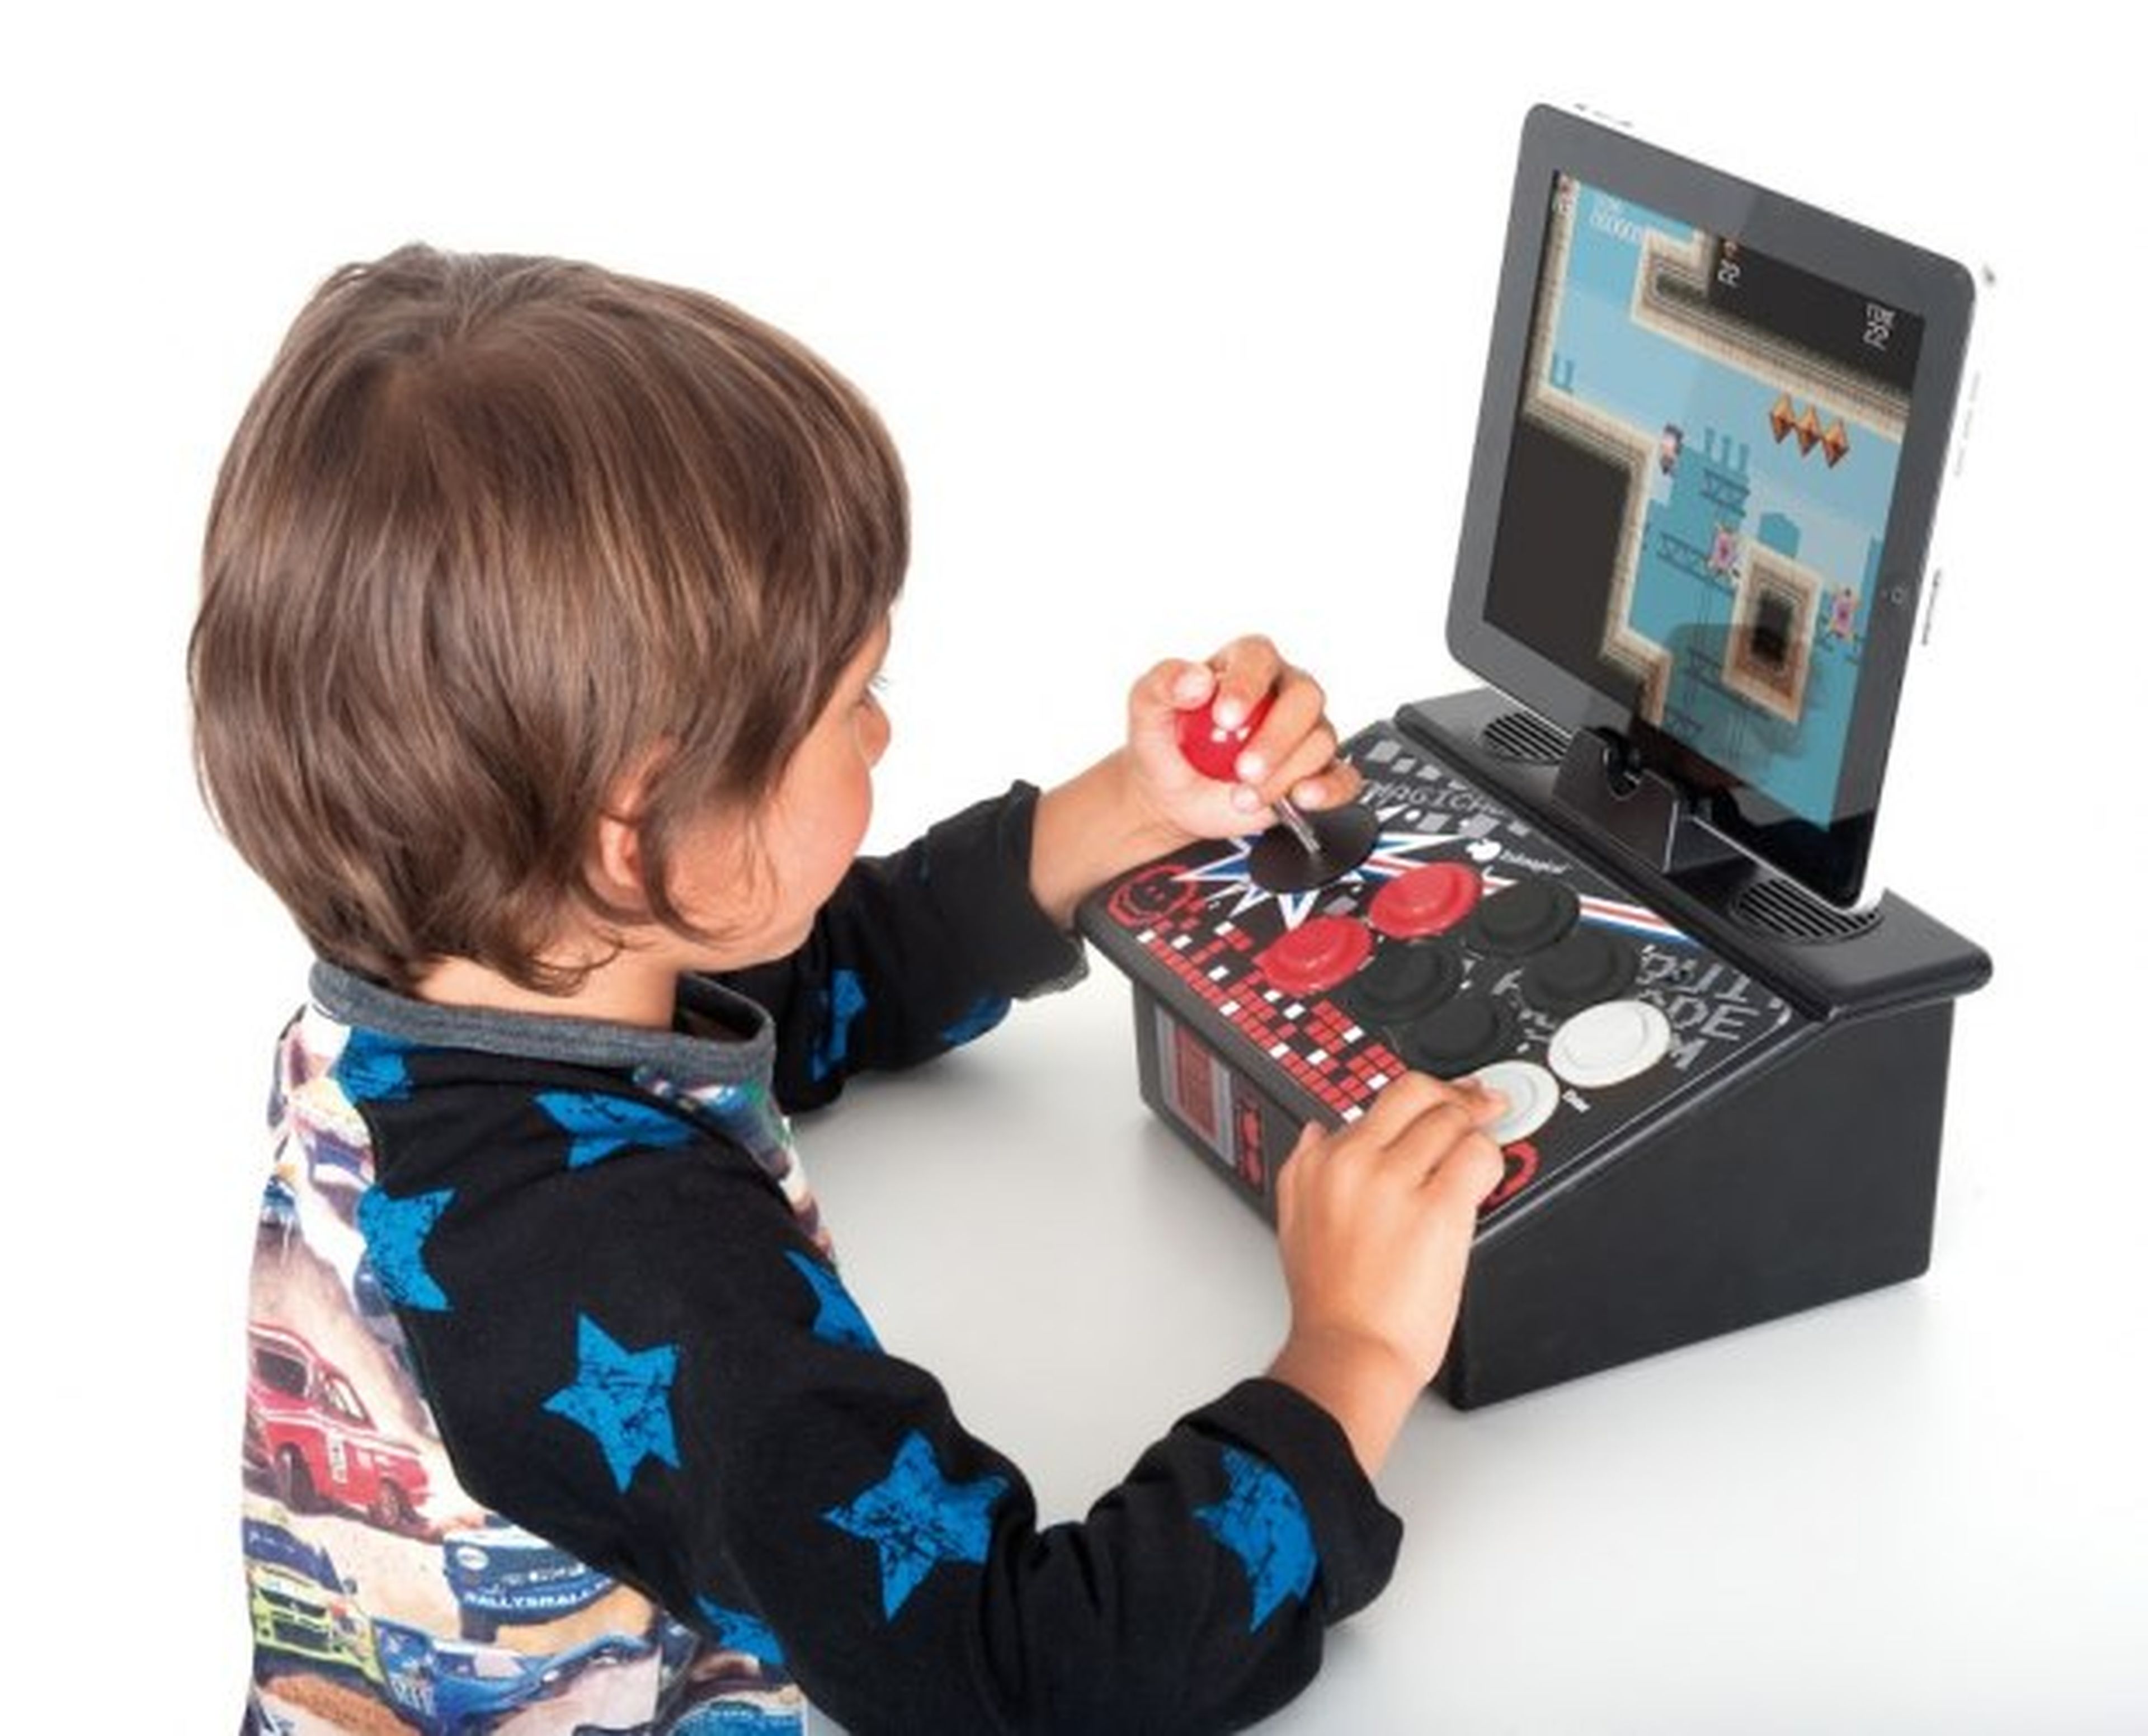 Home Arcade imita una máquina recreativa con la que se puede jugar a 300 juegos clásicos